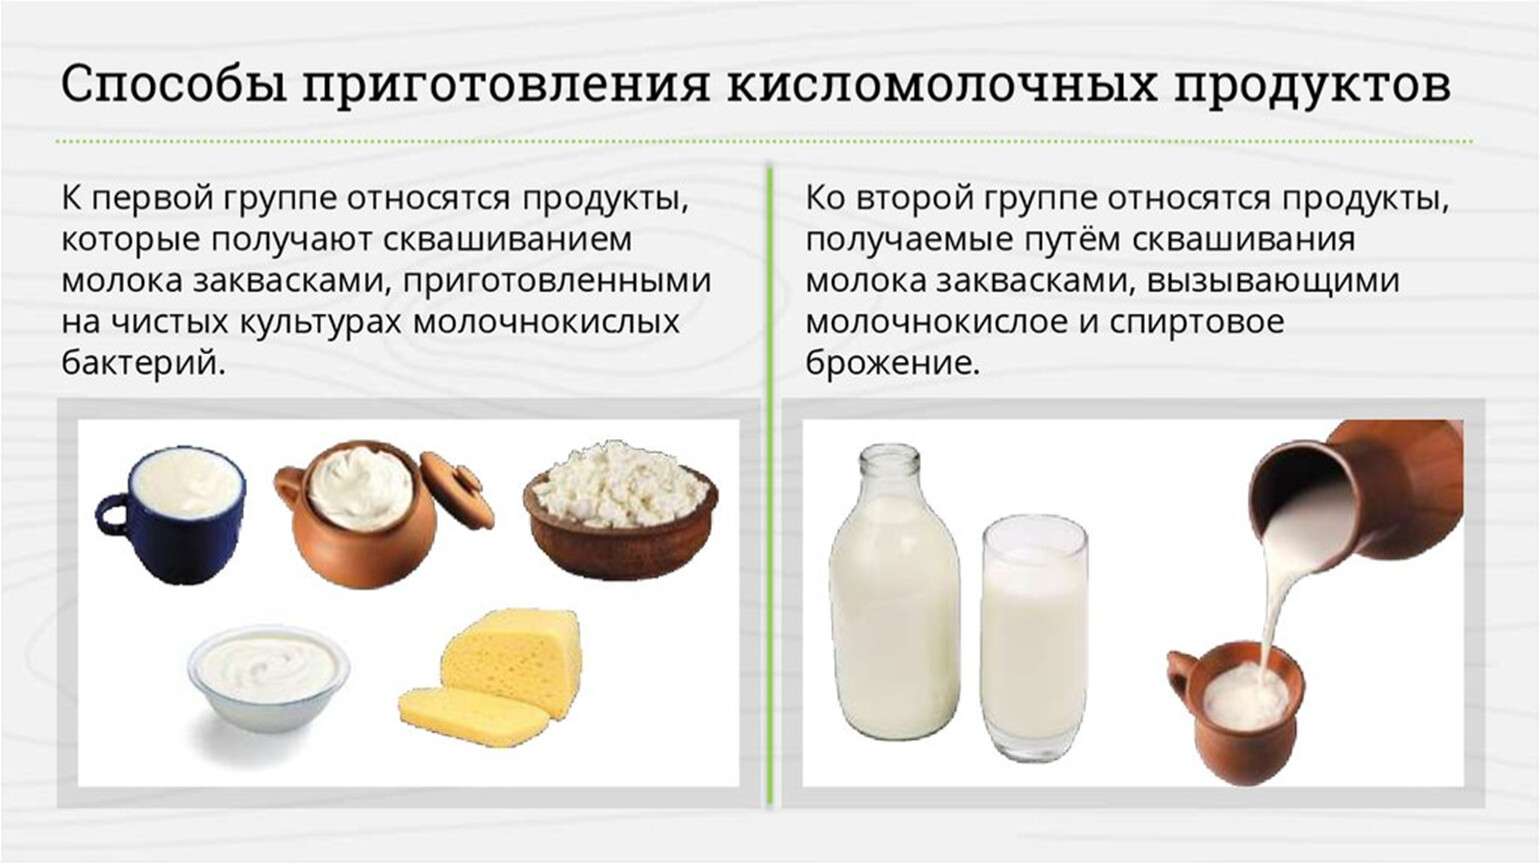 Способы получения пищи. Методы приготовления молочнокислых продуктов.. Кисломолочные продукты продукты. Классификация кисломолочных продуктов. Ассортимент молочных и кисломолочных продуктов.